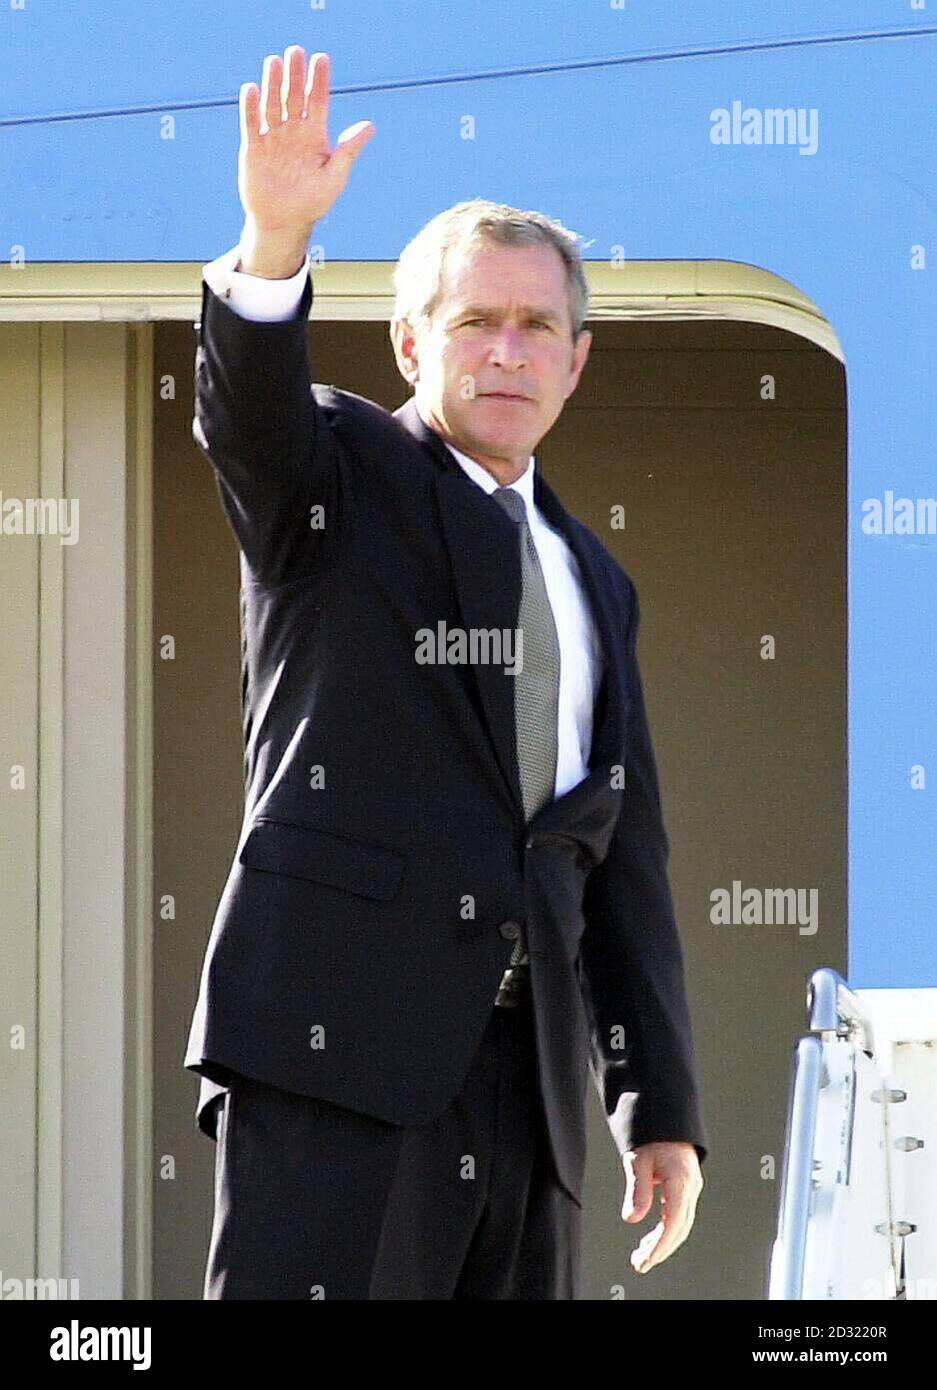 Il Presidente DEGLI STATI UNITI Bush, prima di partire da Brize Norton, Oxforshire, su Air Force One per volare al G8 Summit di Genova, Italia. *...dopo una precedente discussione con il signor Blair nella sua residenza di paese a Chequers, il signor Bush ha riconosciuto, Le sue proposte probabilmente riceveranno una risposta molto più fredda al vertice del G8 di Genova a cui entrambi gli uomini stanno partecipando, dove i leader europei si aspettavano di nuovo di esprimere la loro preoccupazione di rischiare di scatenare una nuova corsa agli armamenti. 21/07/01 più di due terzi dei deputati laburisti al banco del lavoro hanno firmato una mozione parlamentare che chiede a Tony Blair di adottare un approccio prudente Foto Stock